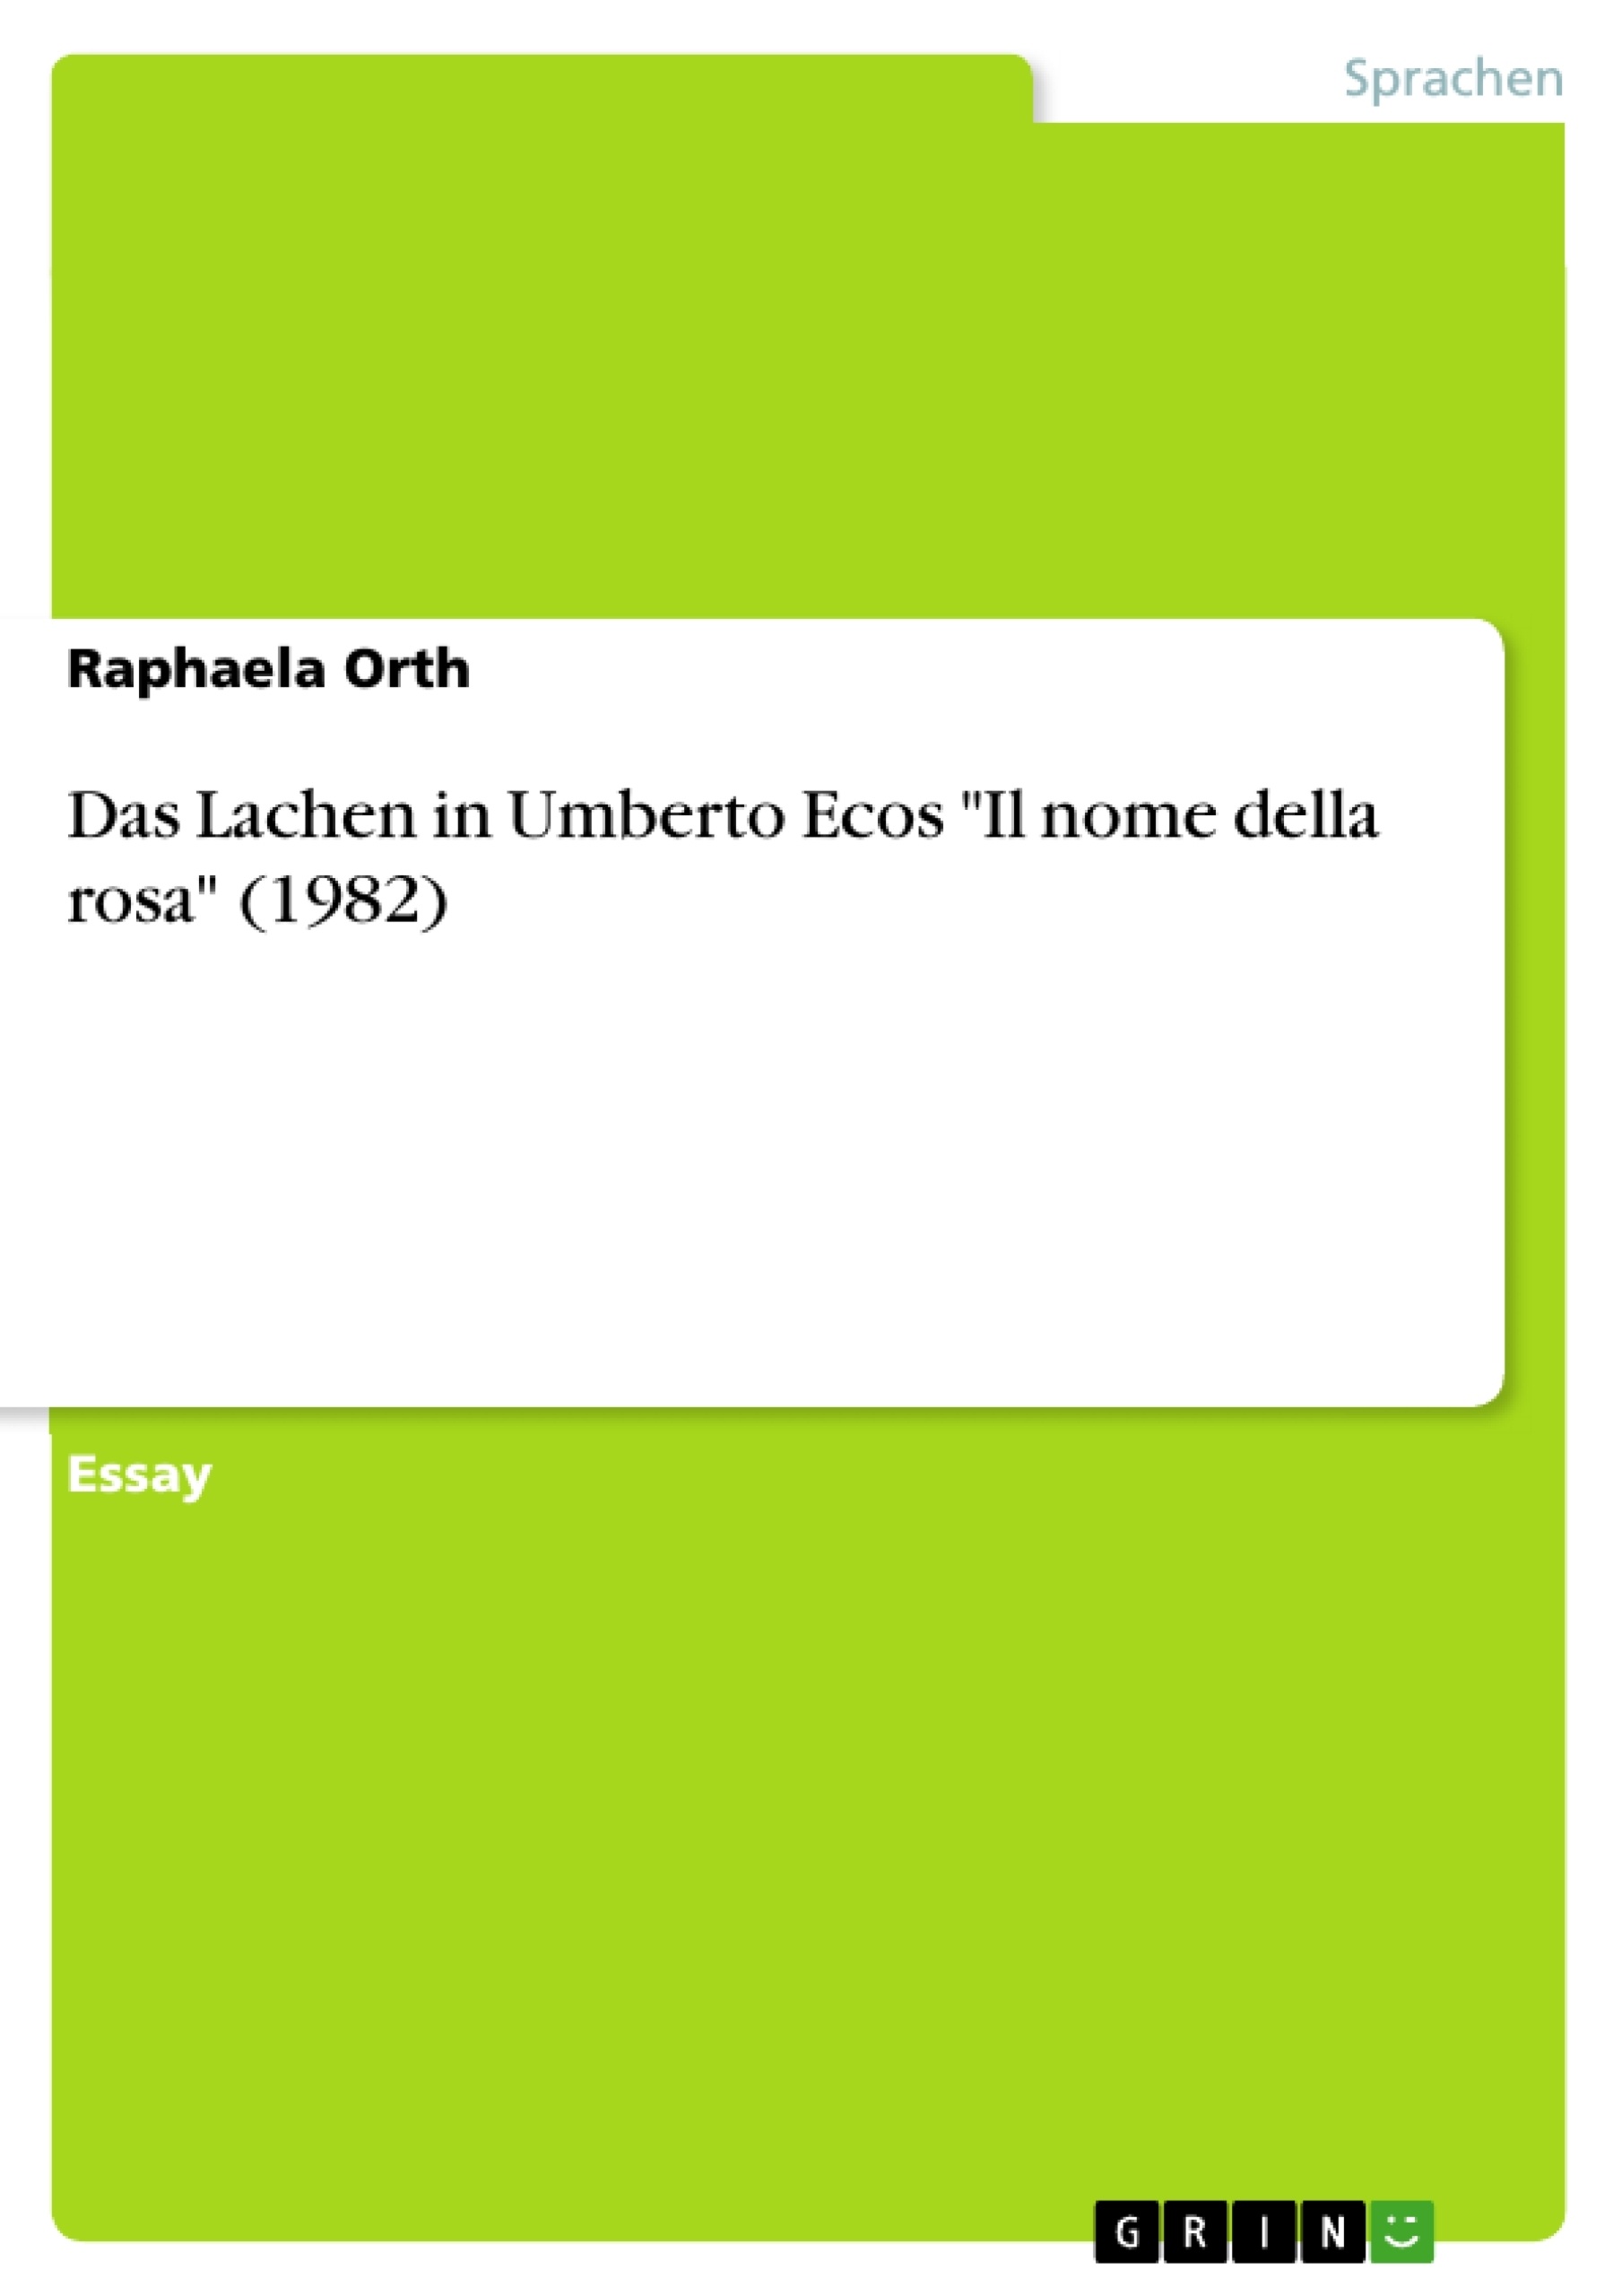 Titre: Das Lachen in Umberto Ecos "Il nome della rosa" (1982)